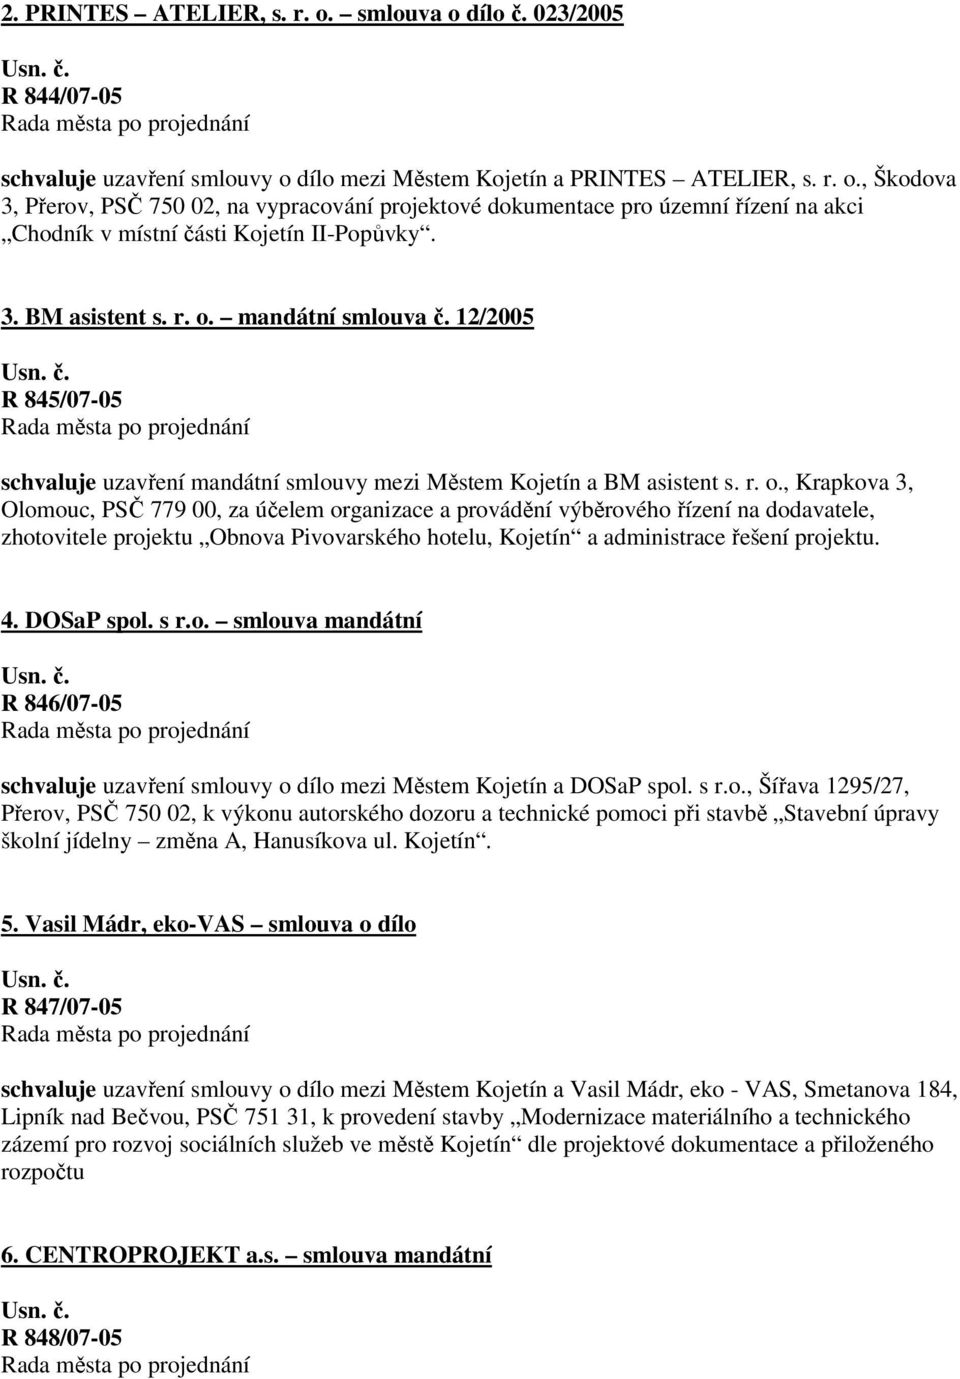 mandátní smlouva č. 12/2005 R 845/07-05 schvaluje uzavření mandátní smlouvy mezi Městem Kojetín a BM asistent s. r. o.